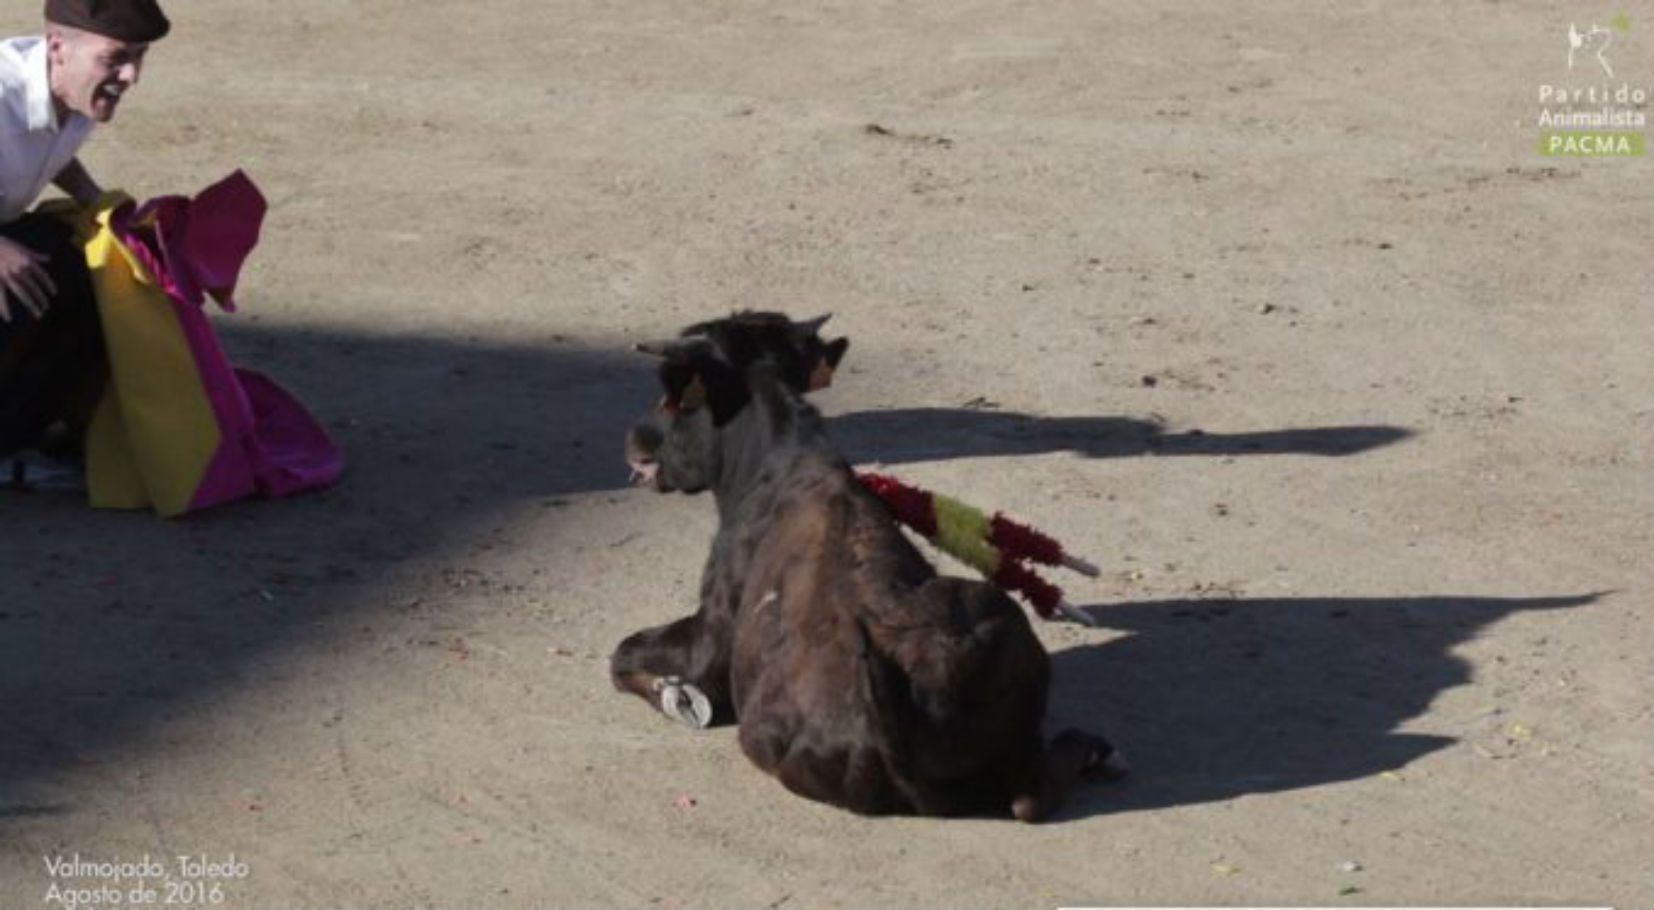 Un becerro toreado hasta morir, nuevo vídeo-denuncia de PACMA